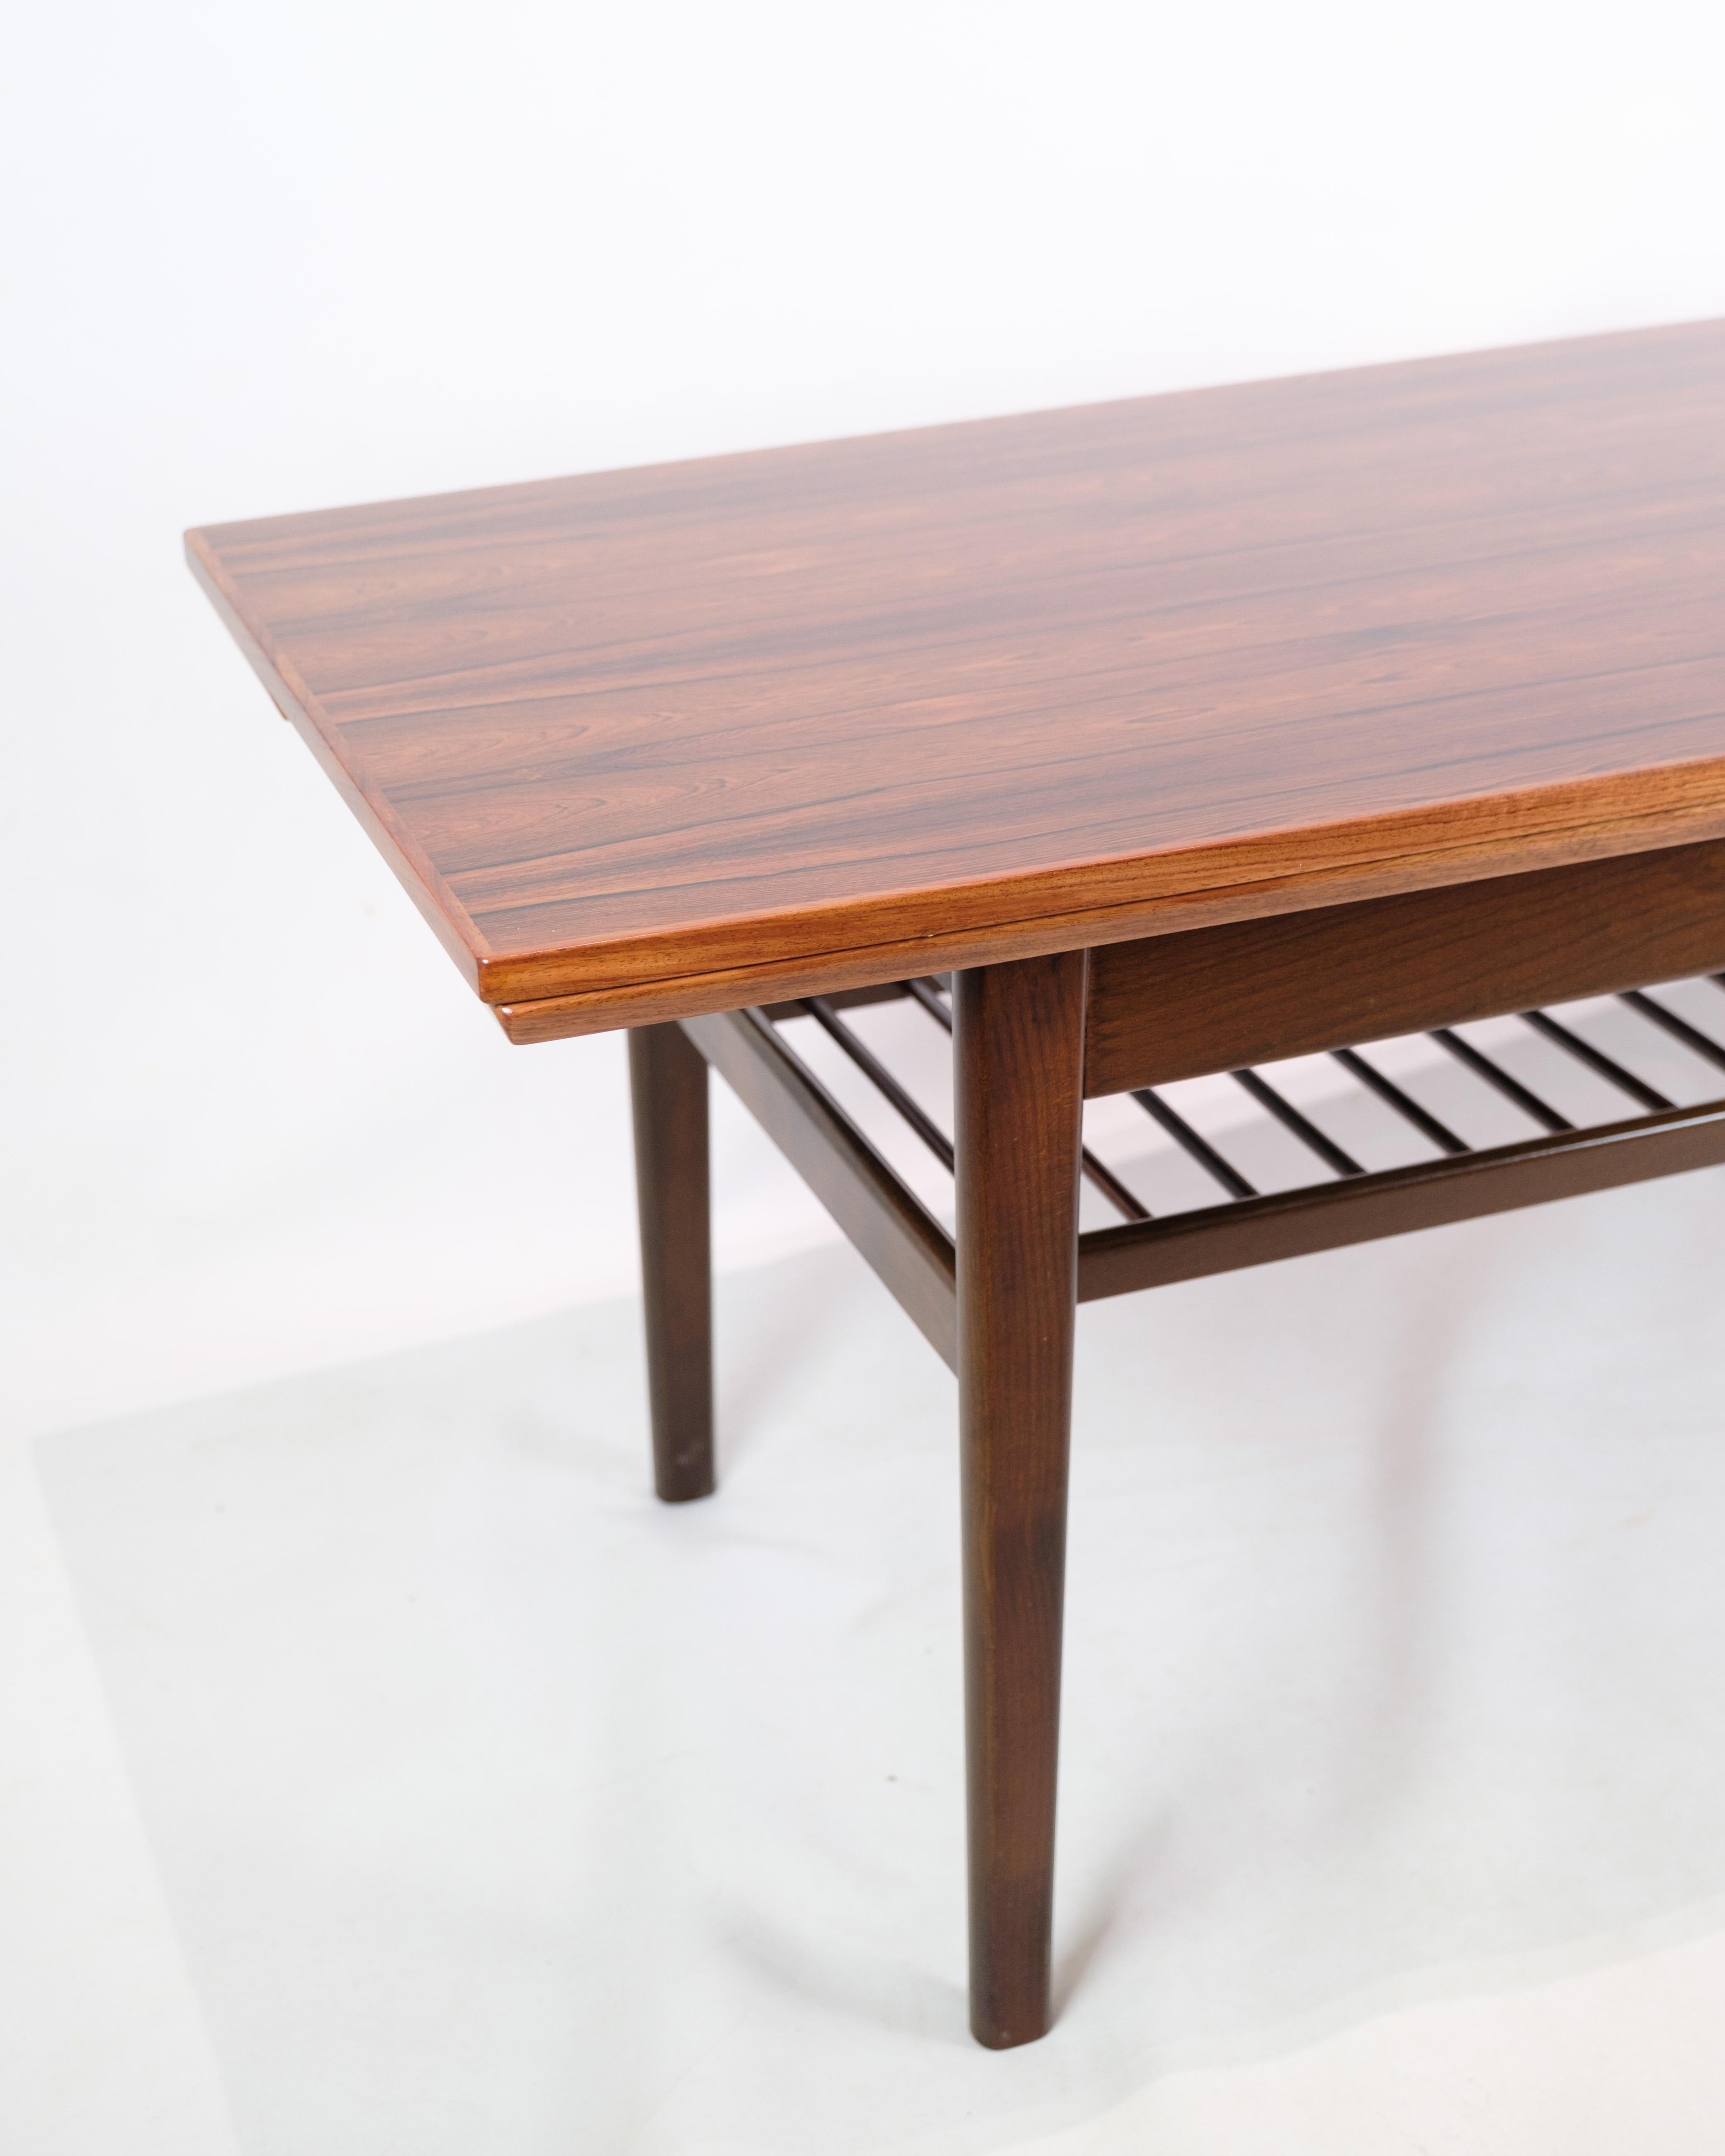 Cette table basse est une impressionnante pièce d'art mobilier qui respire à la fois l'élégance et la fonctionnalité. Fabriqué en bois de rose et conçu par le célèbre Kai Kristiansen pour Vildbjerg Møbelfabrik en 1960, il représente un point